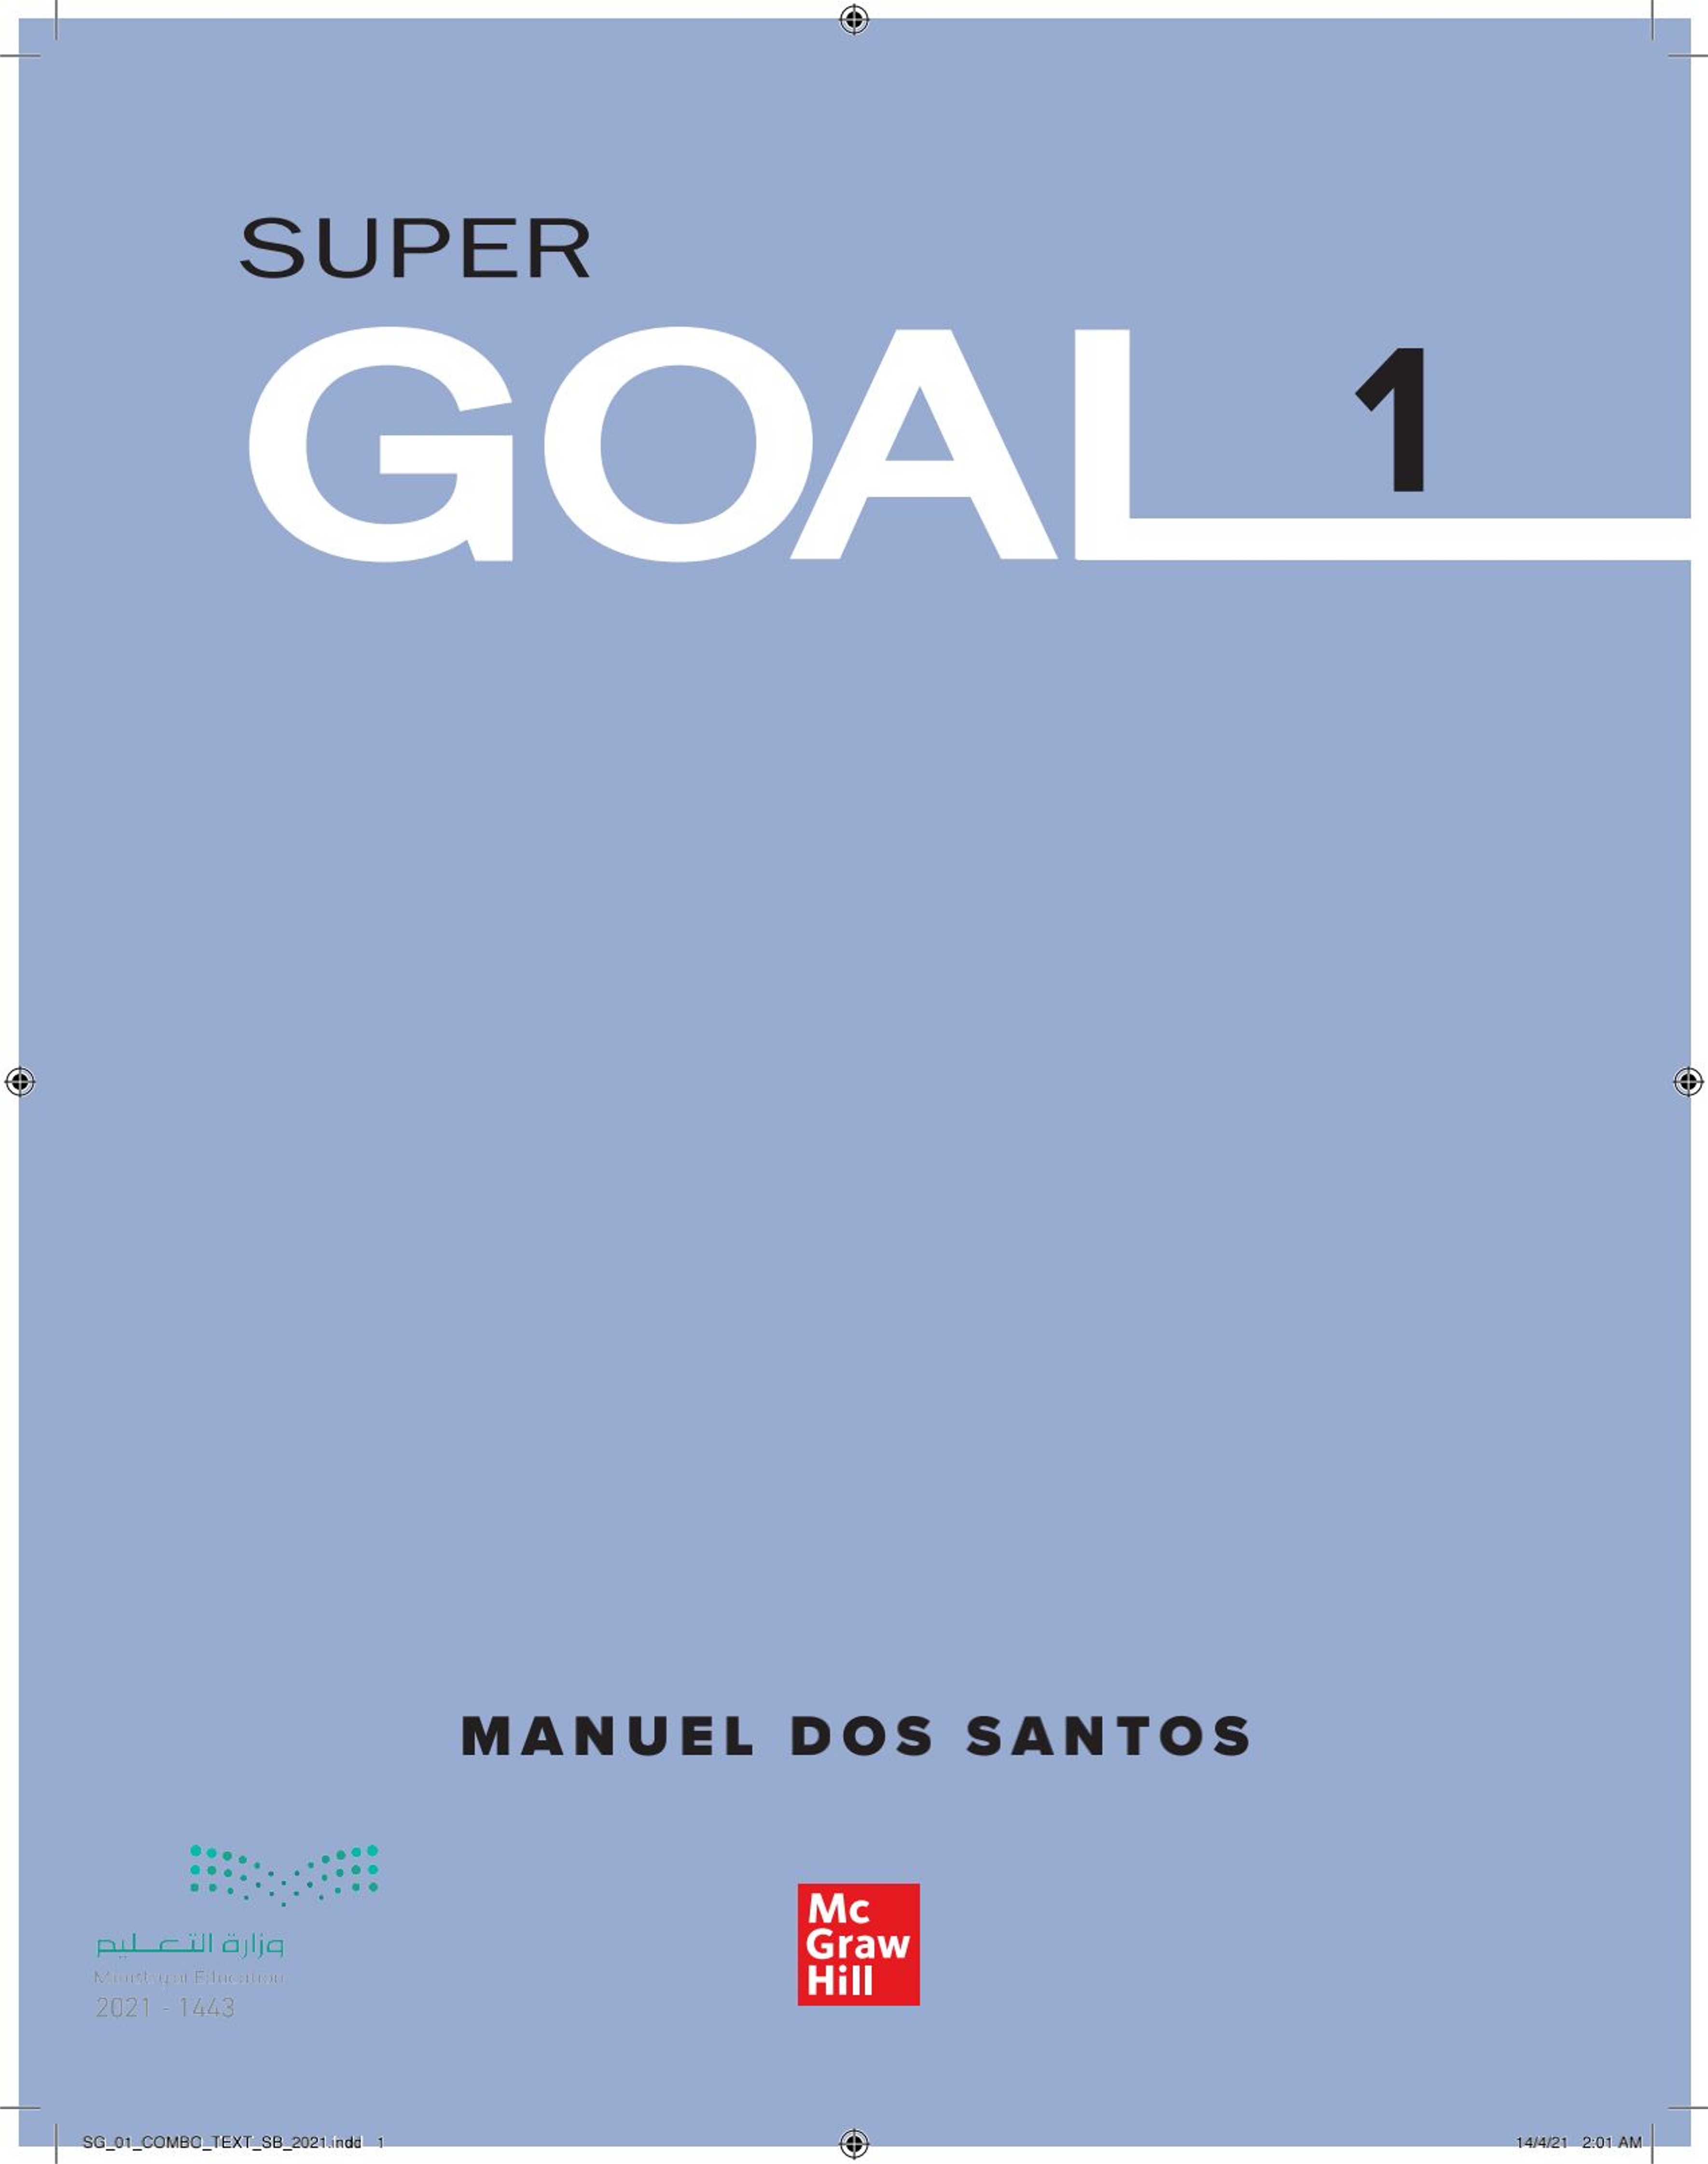 Super-goal